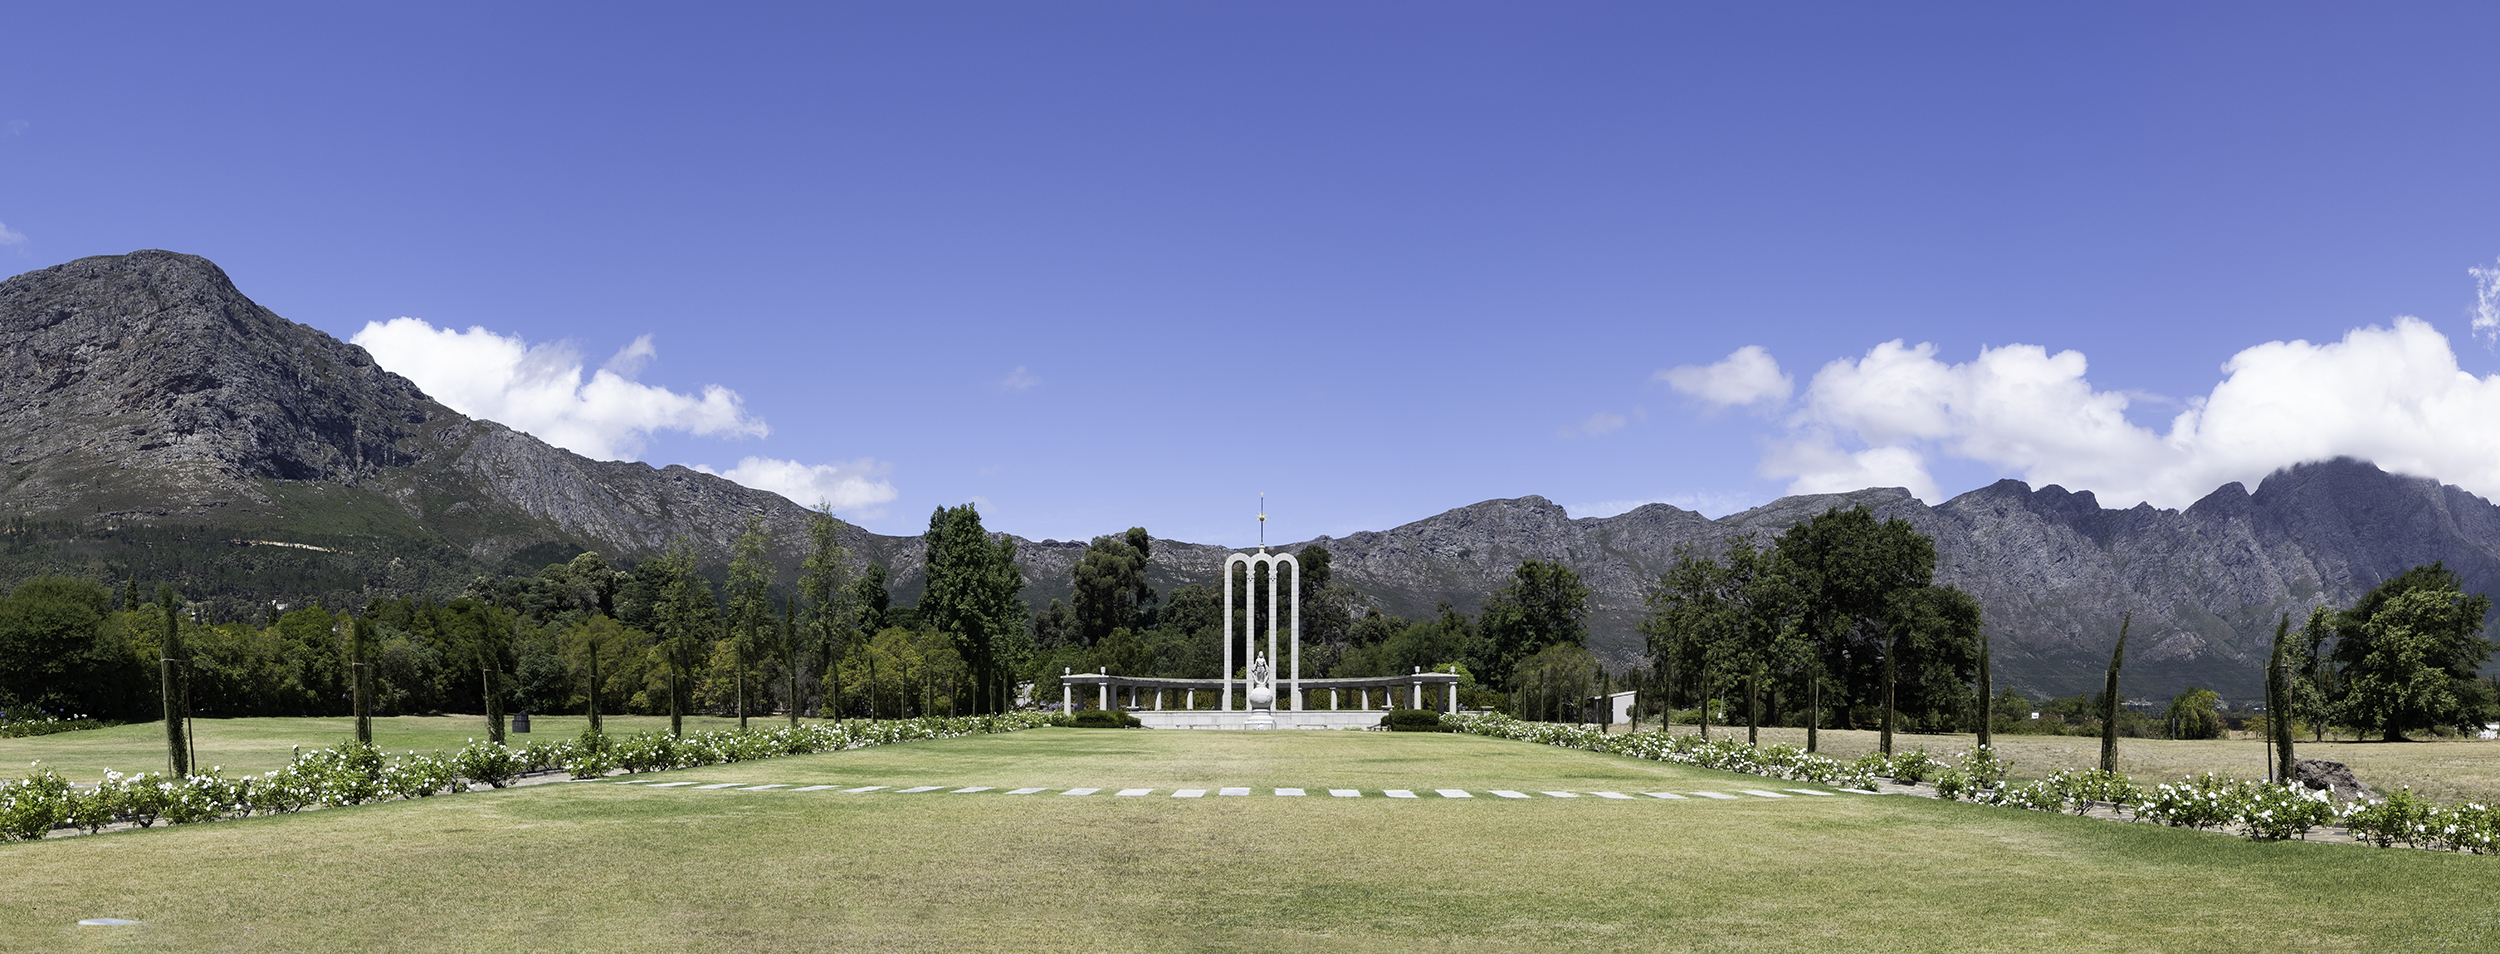 Huguenot Memorial, Franchhoek, SA, February Afternoon